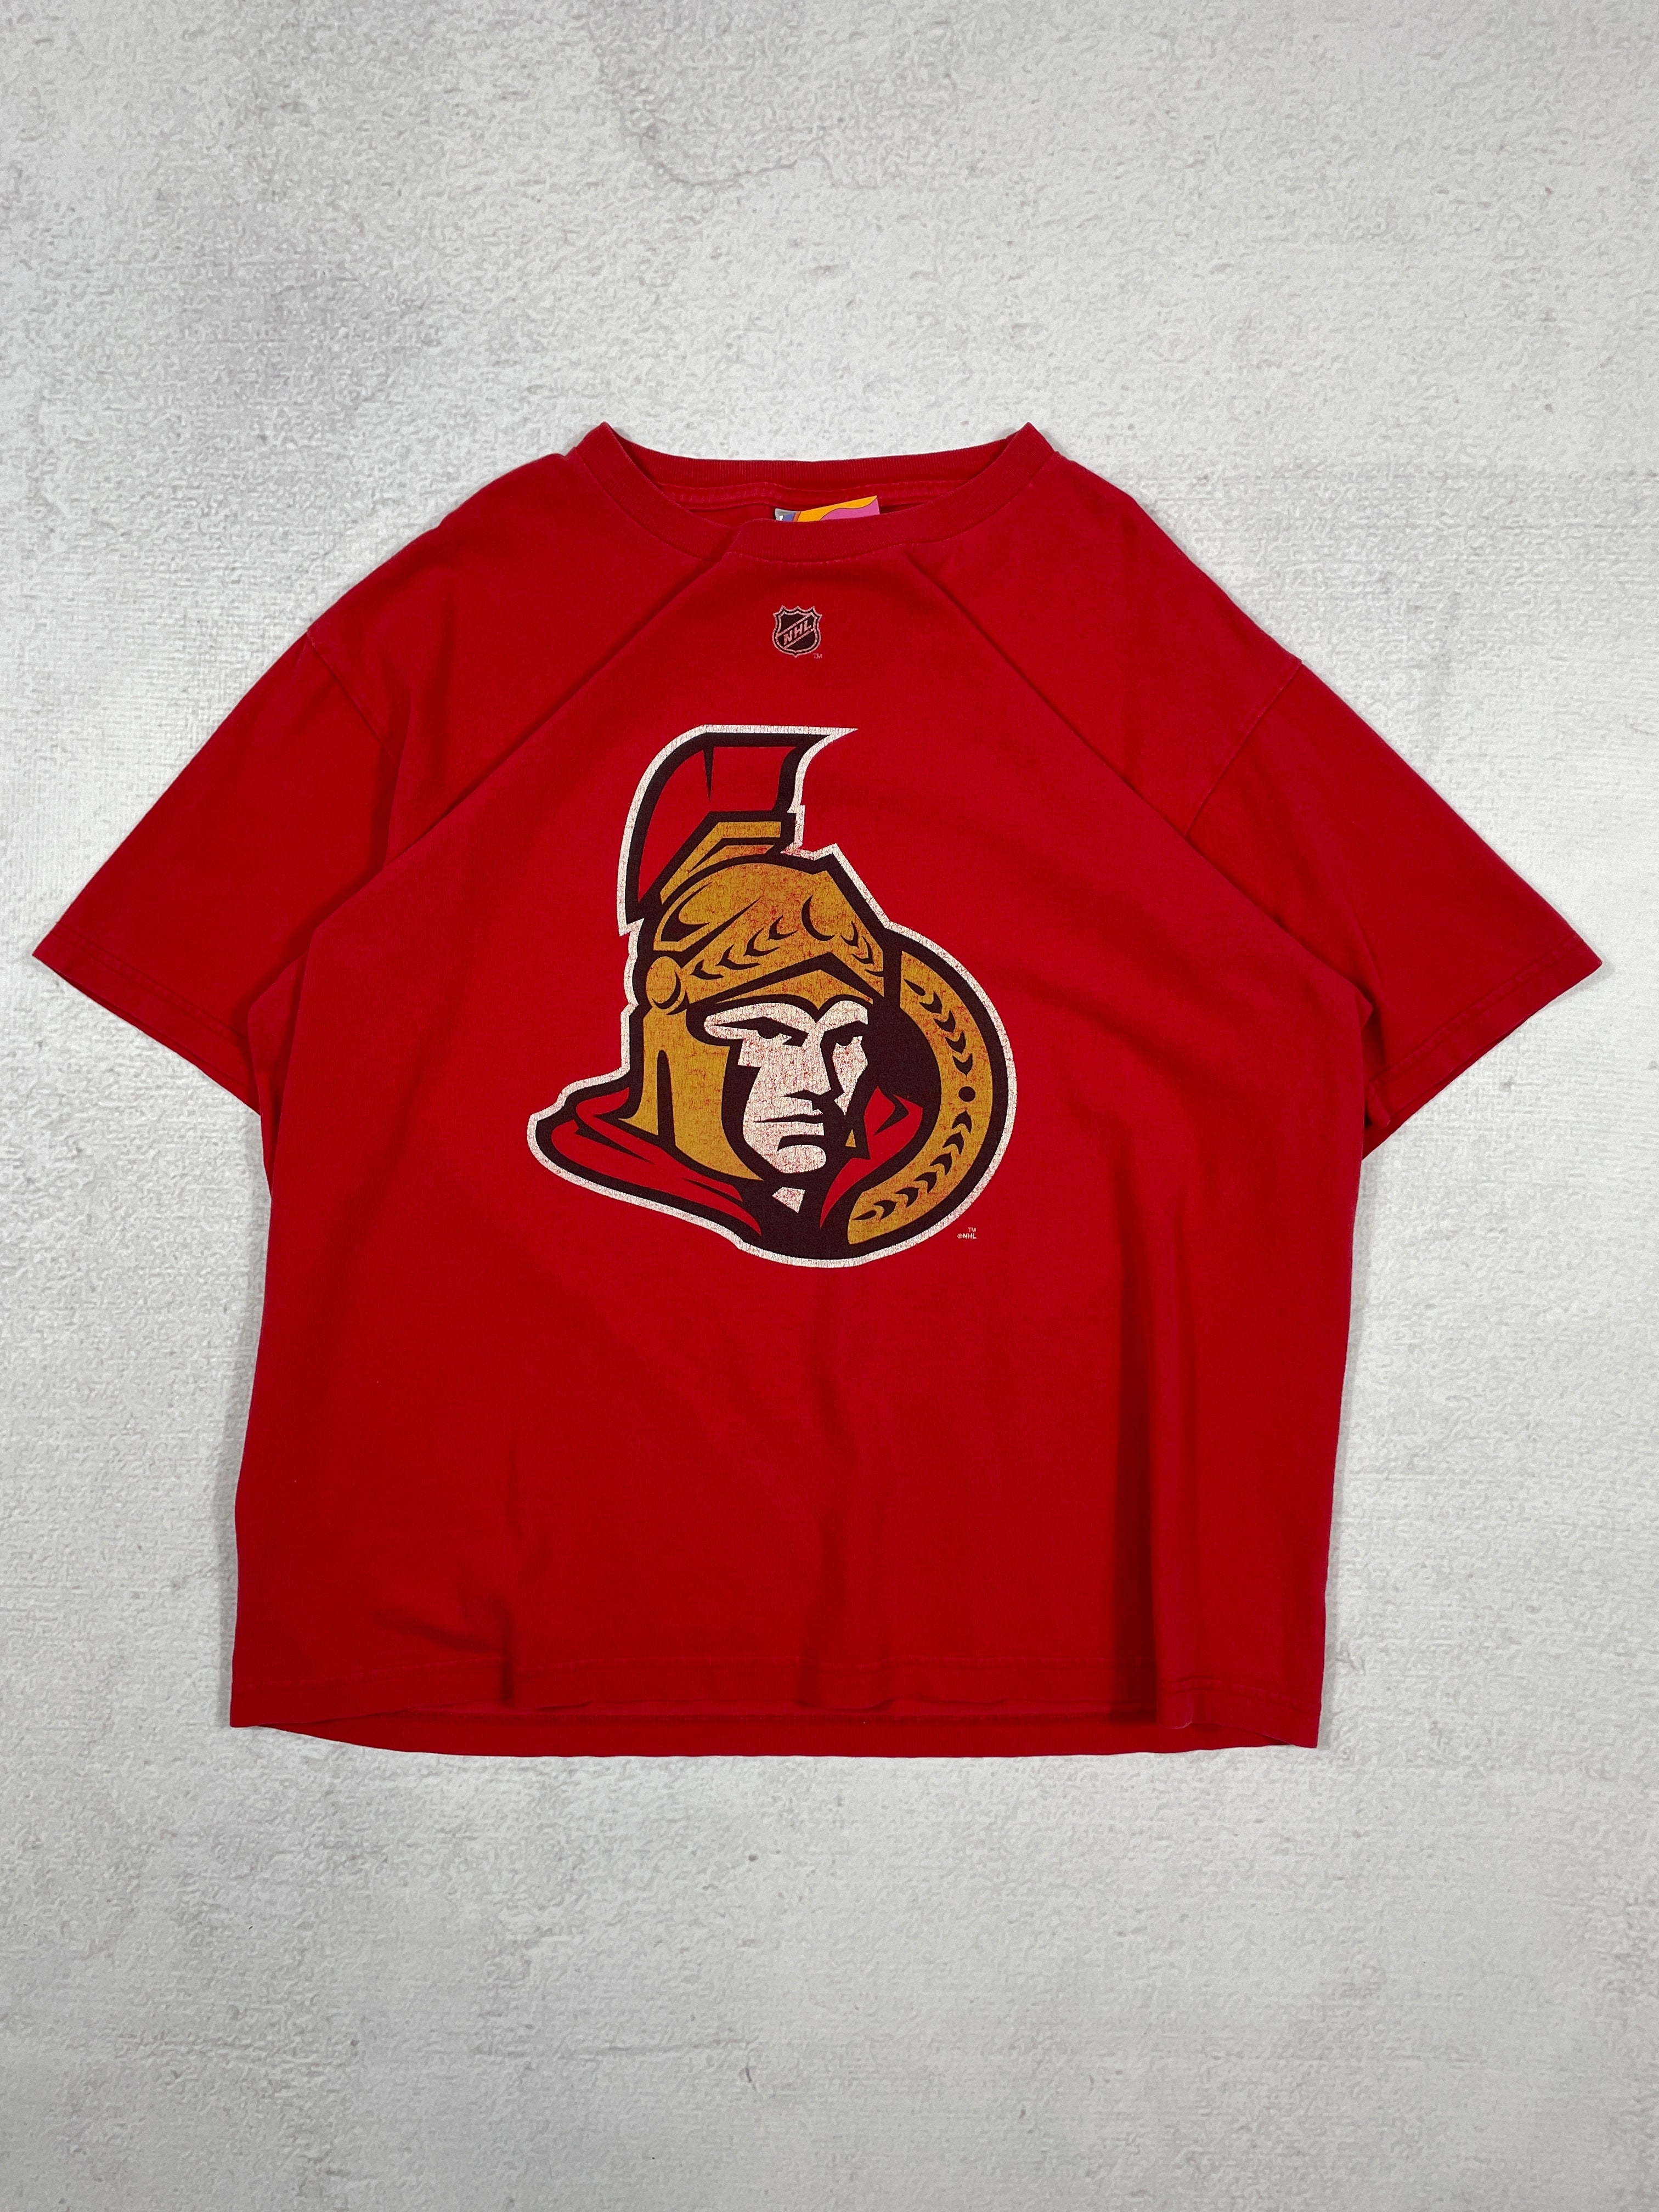 Vintage NHL Ottawa Senators Chris Neil #25 T-Shirt - Men's Large